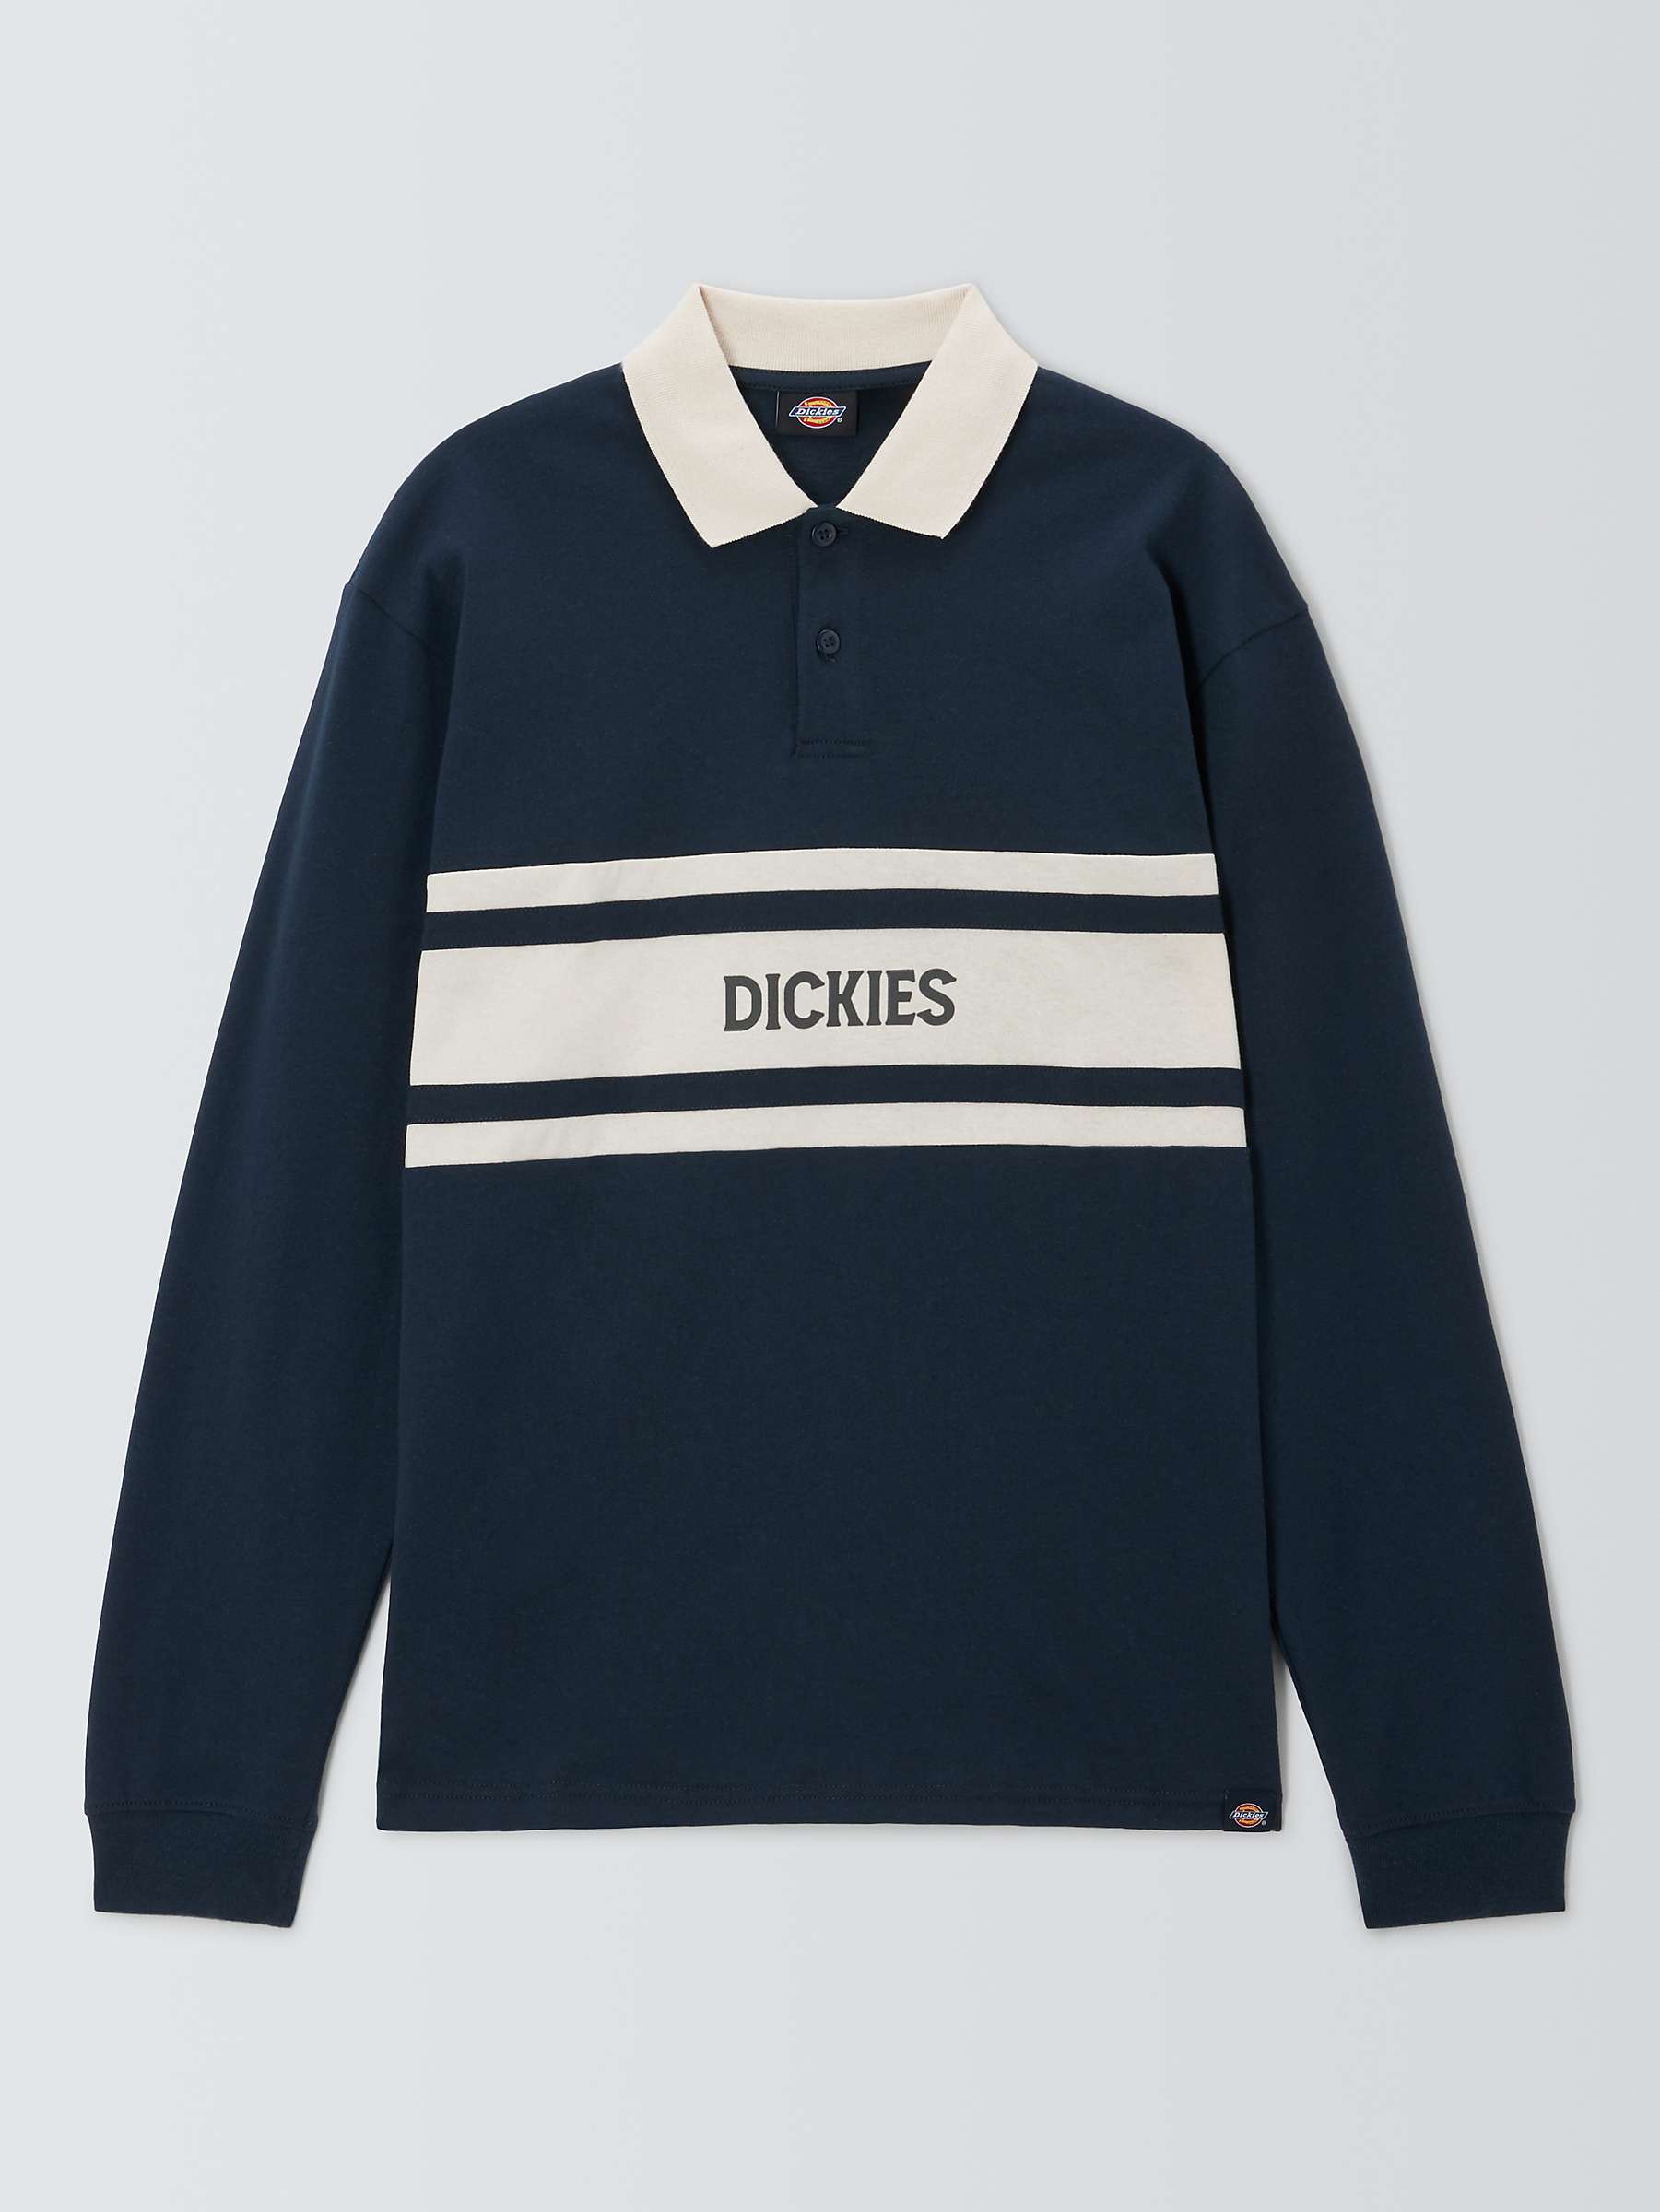 Buy Dickies Yorktown Rugby Long Sleeve Shirt, Dark Navy Online at johnlewis.com